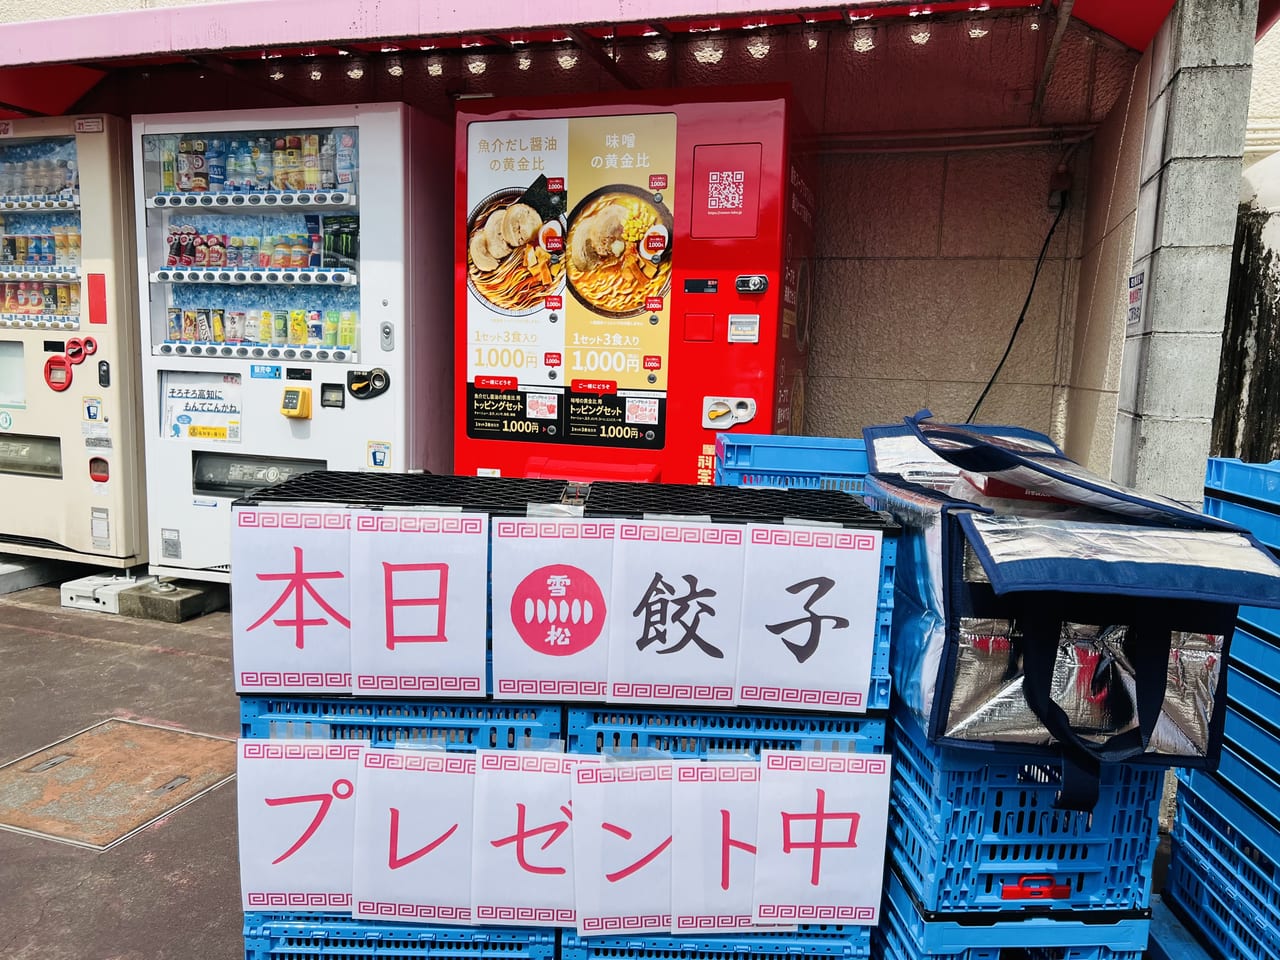 「日本ラーメン科学研究所 イオン高知旭町店」のオープニングキャンペーンの様子